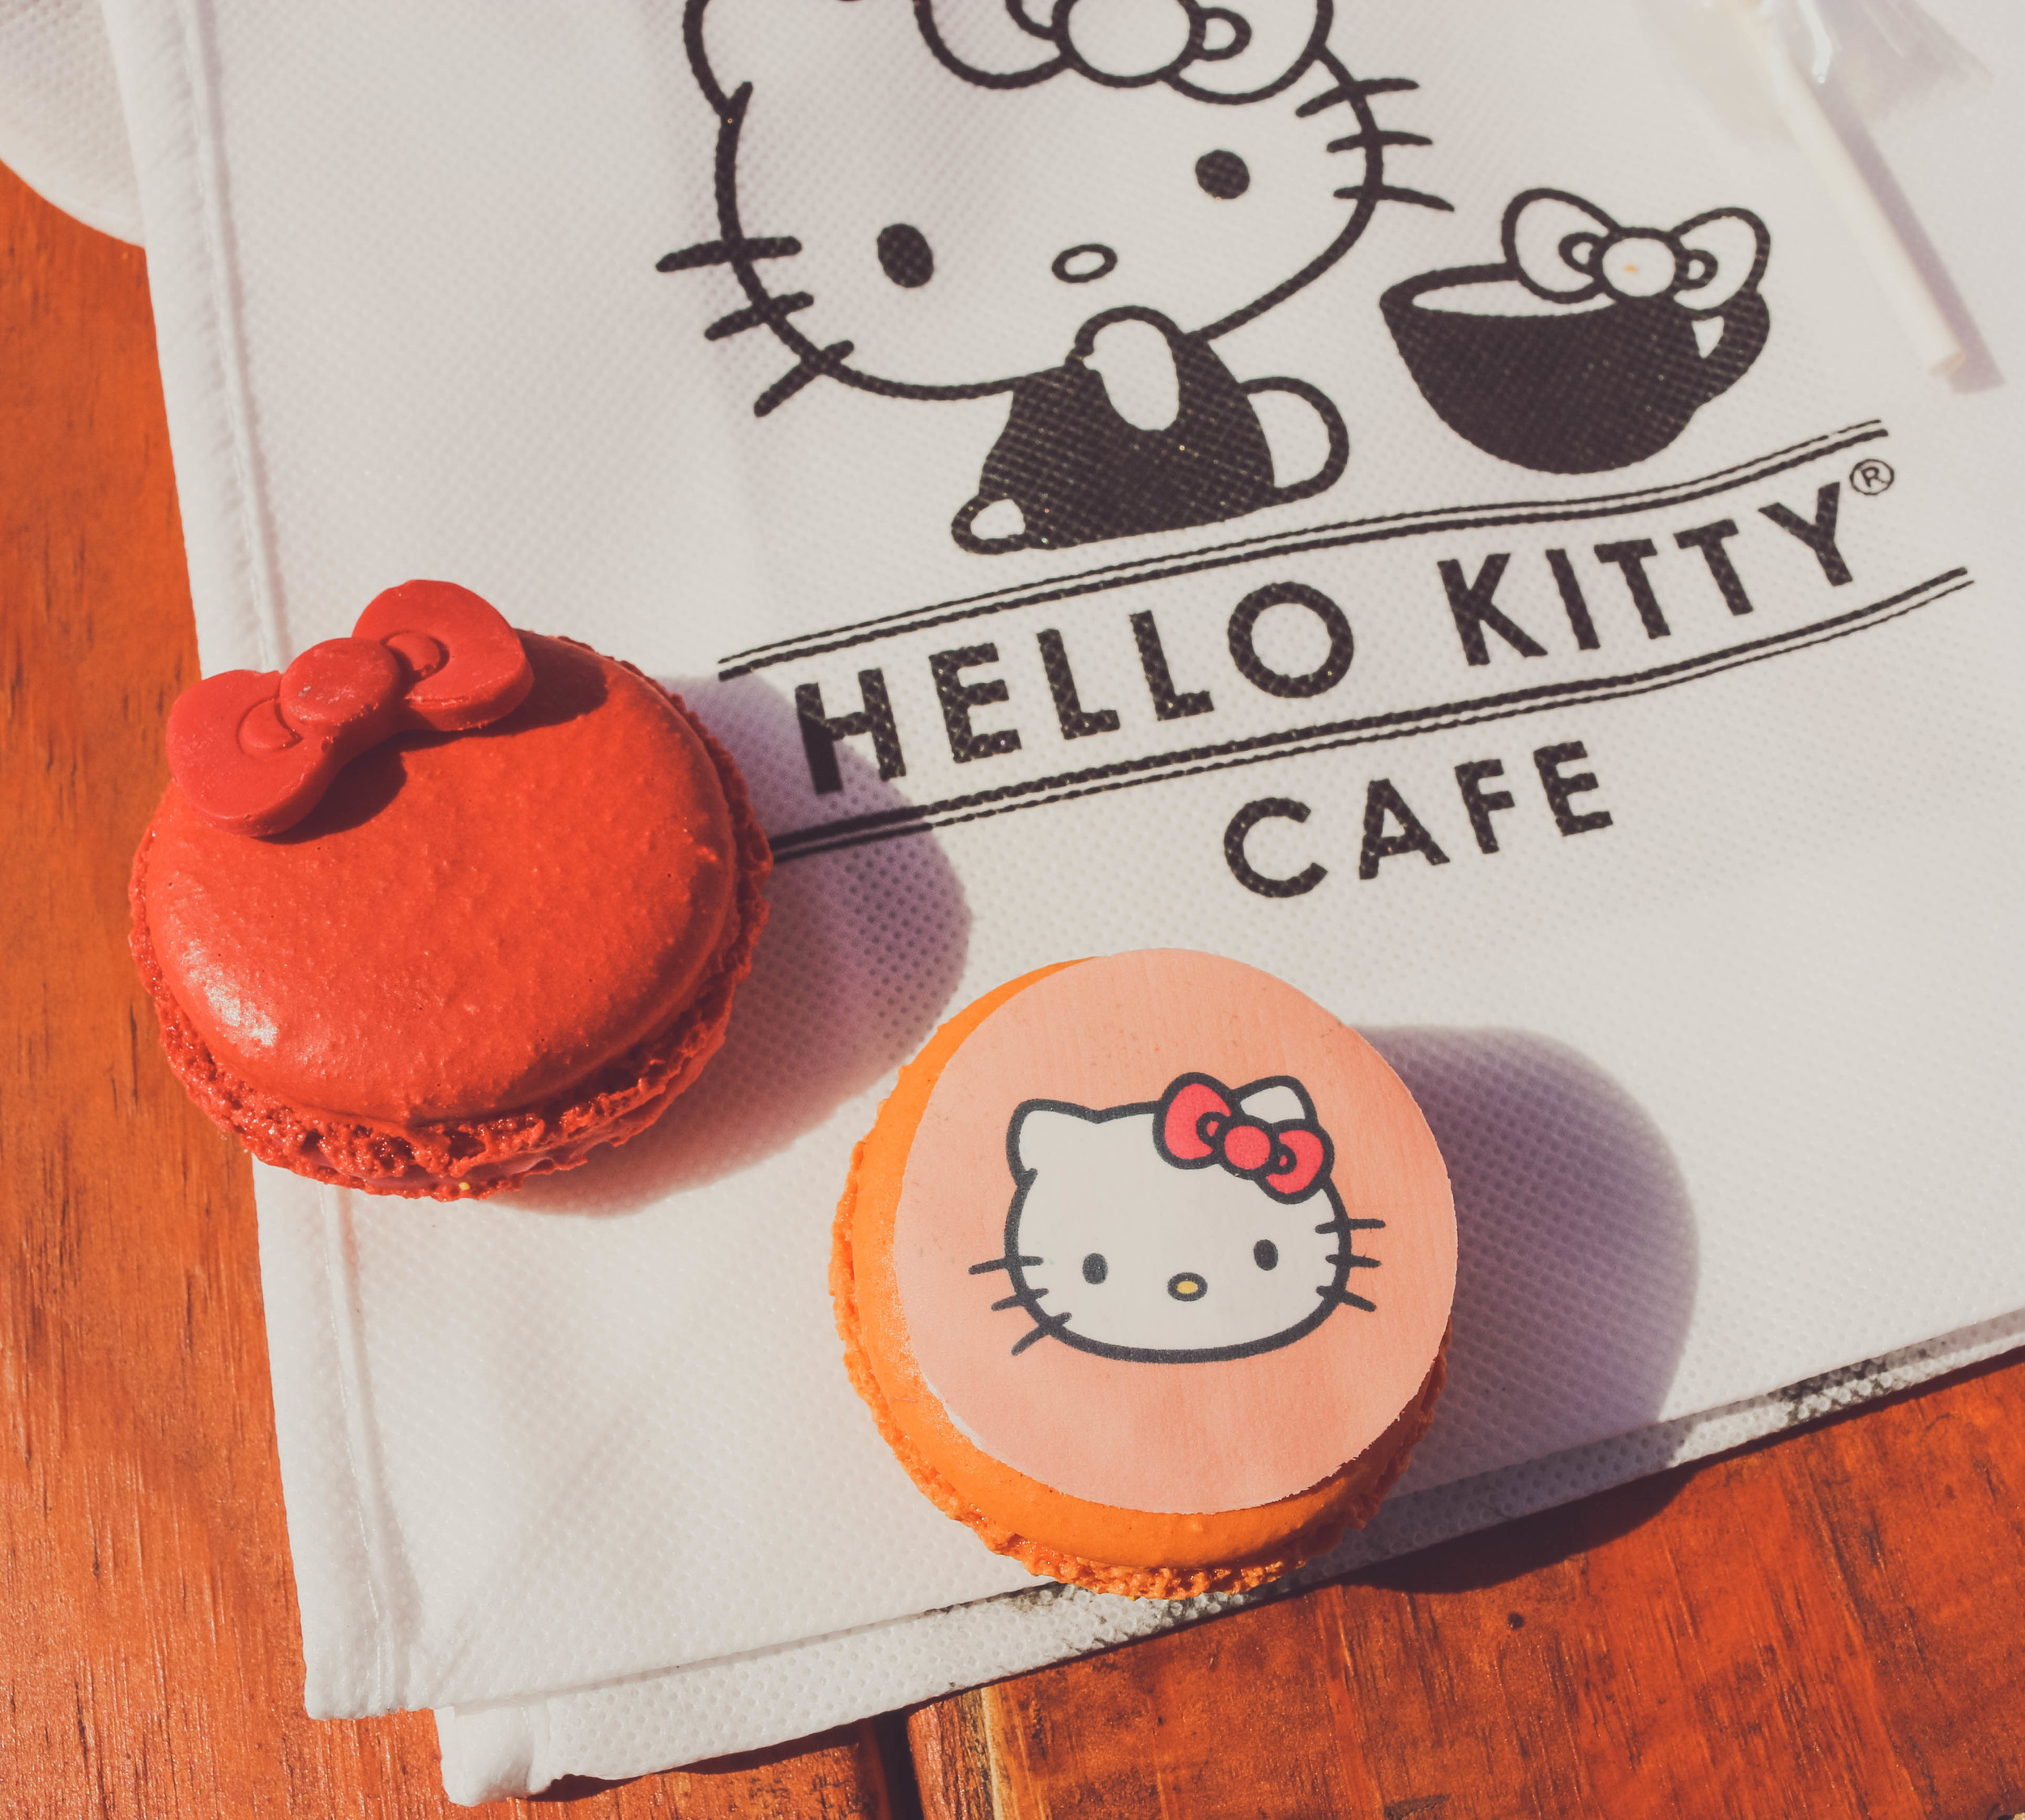 Hello Kitty Con 2014 on ourcitylights-6.jpg